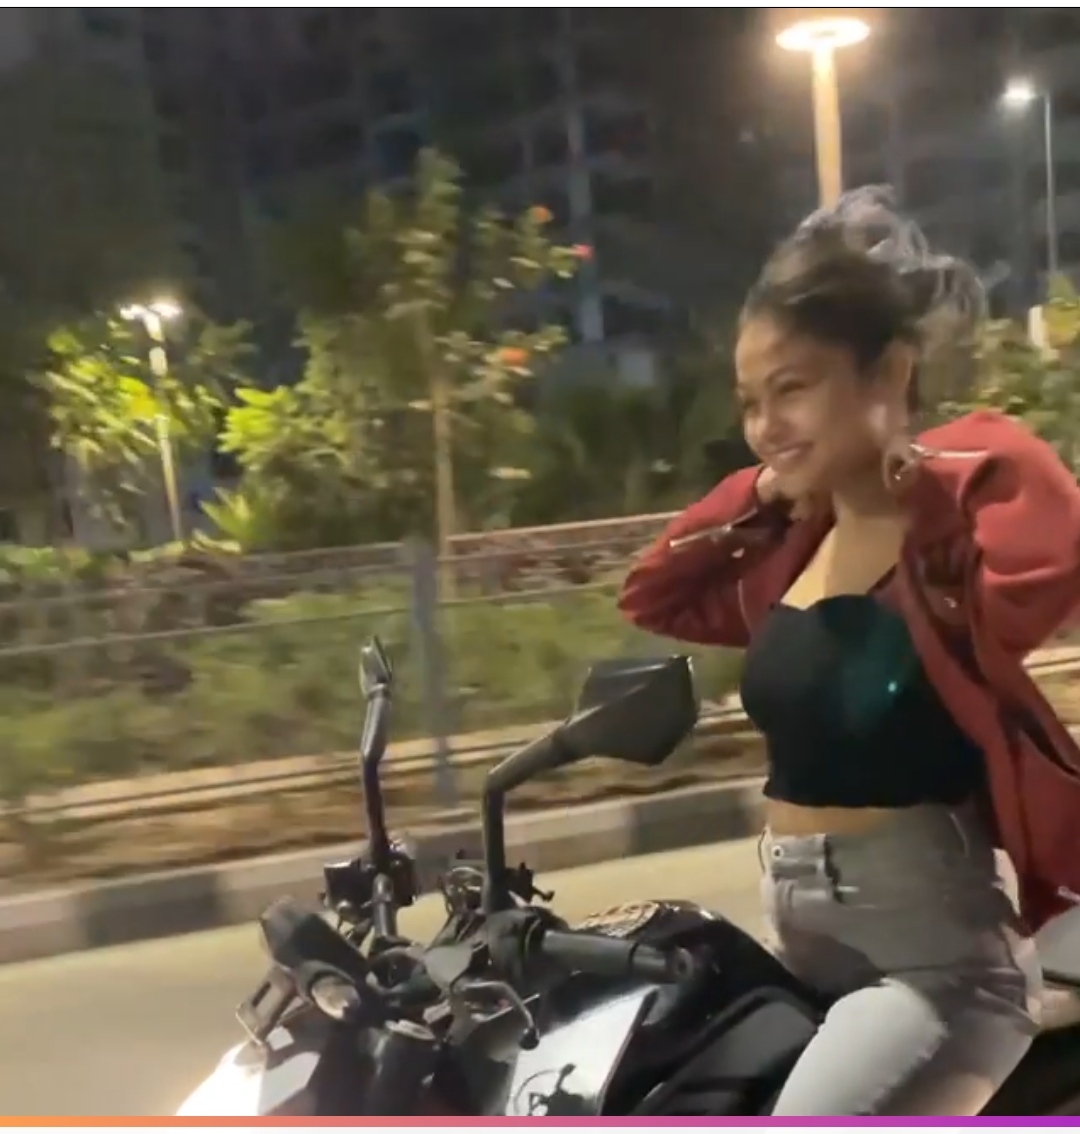 सूरत की सड़कों पर खतरनाक बाइक स्‍टंट करती थी लड़की, पुलिस ने किया गिरफ्तार